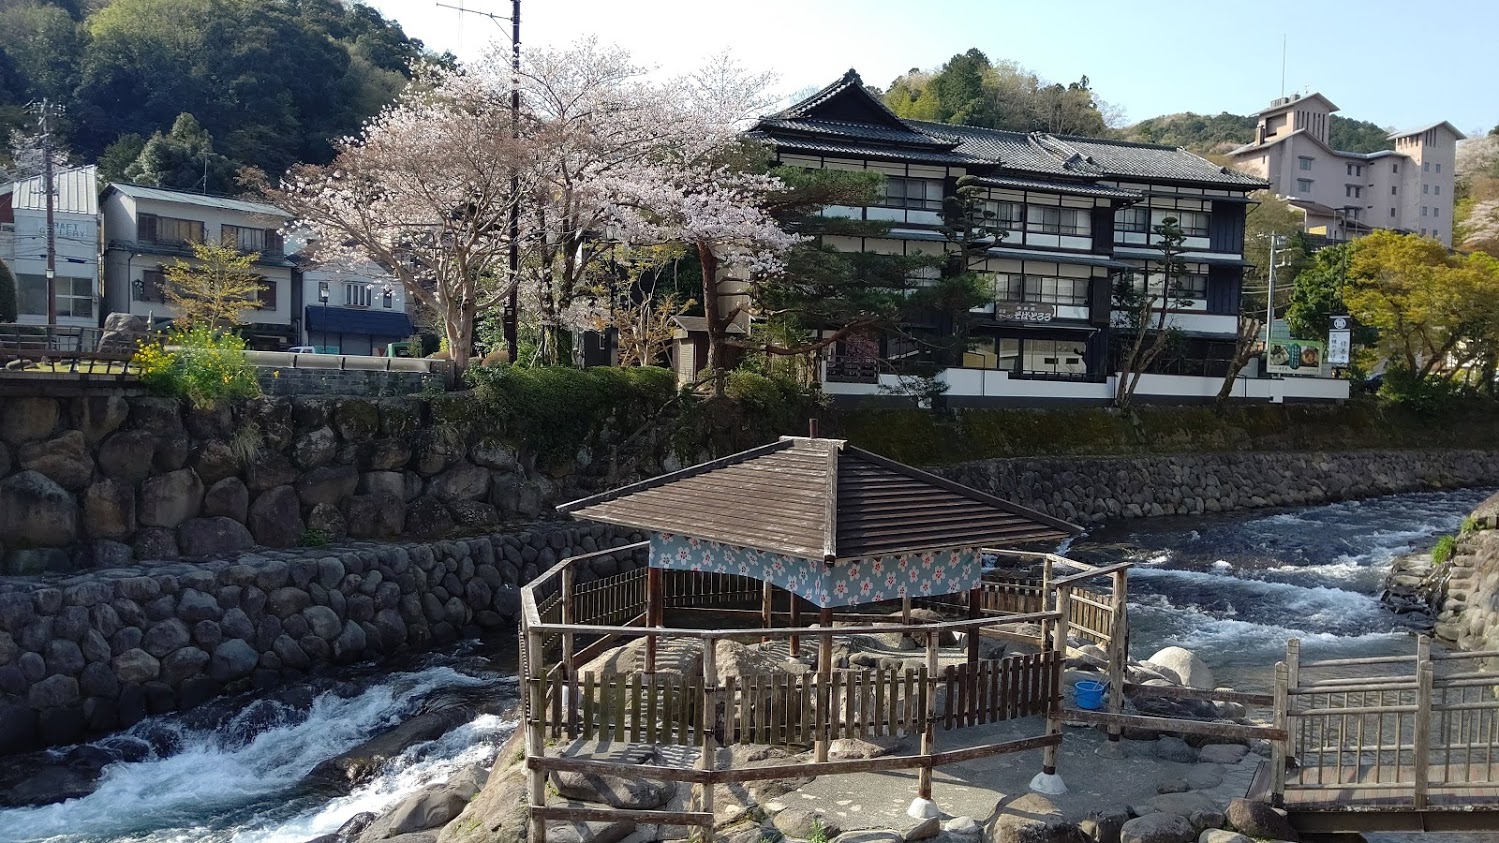 Tokko-no-yu (Open air spa)